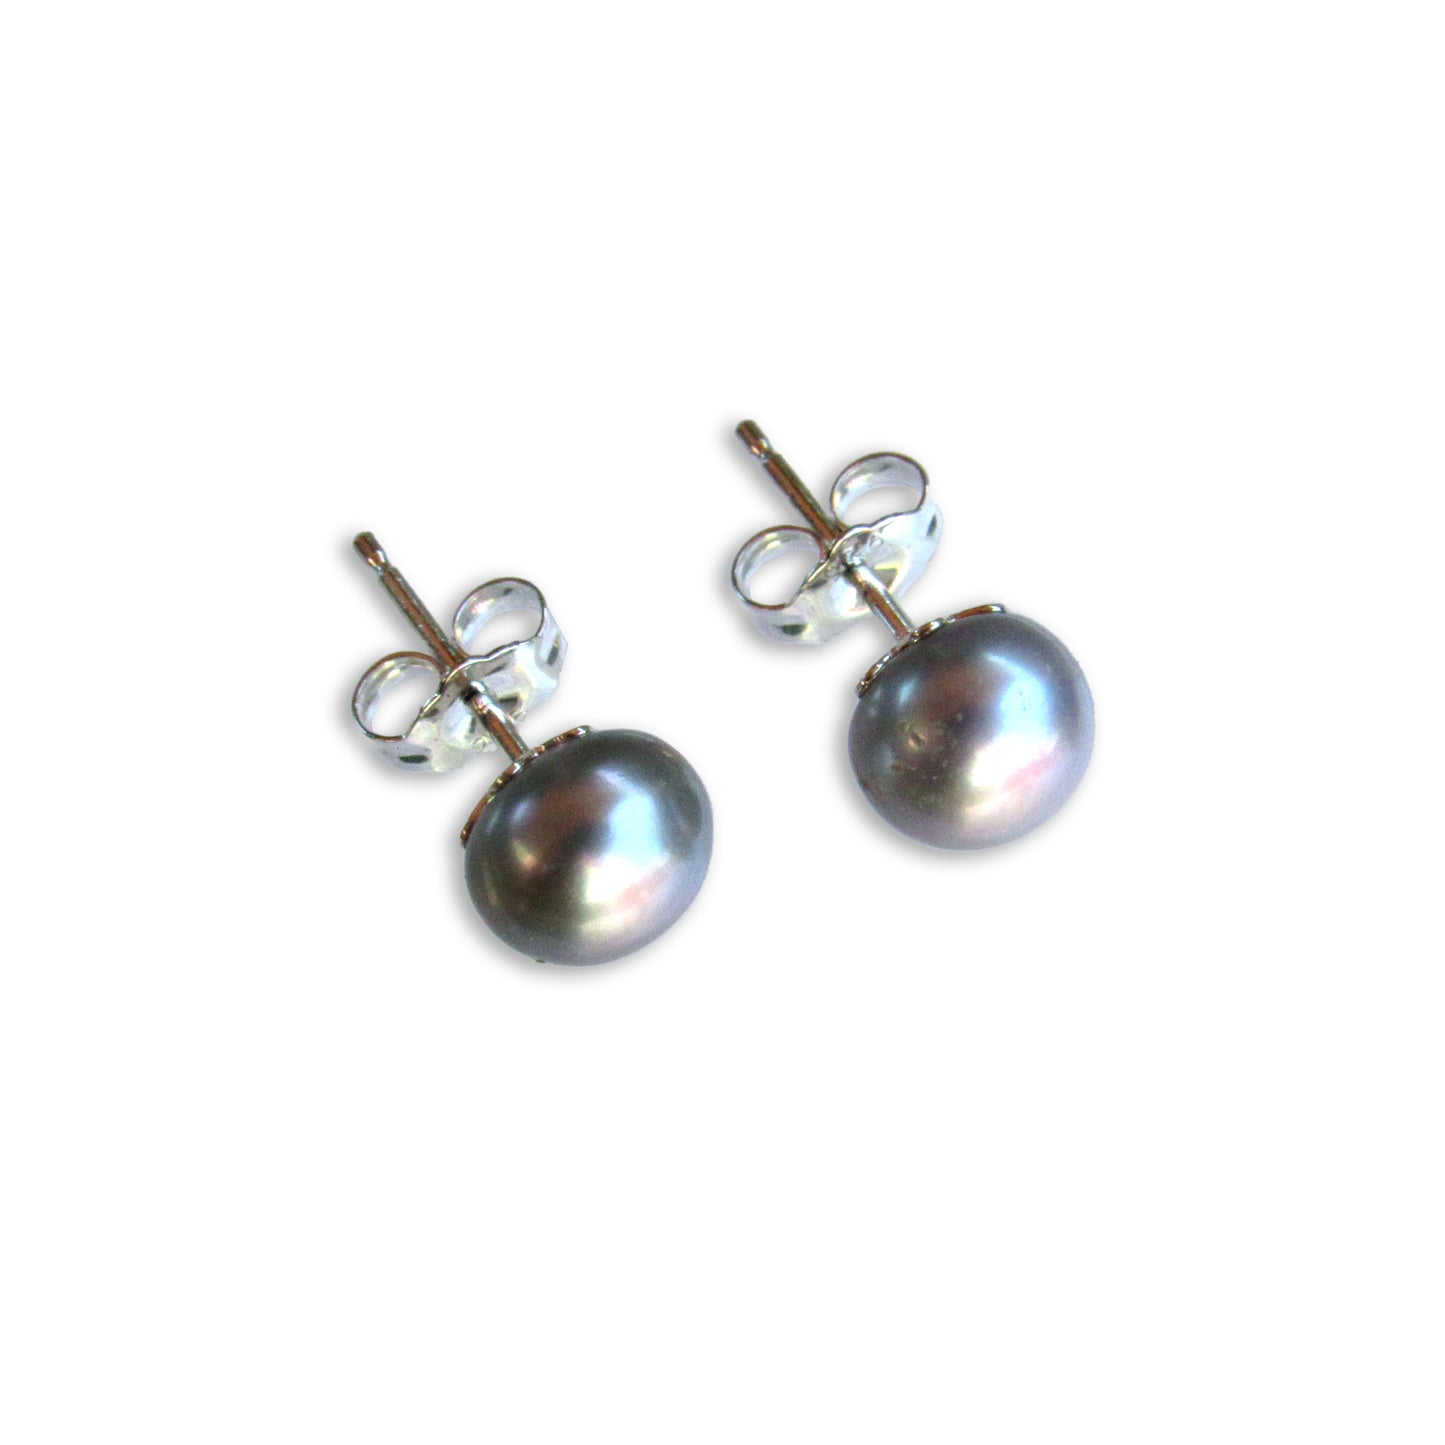 Pearl Stud Earrings on sterling silver